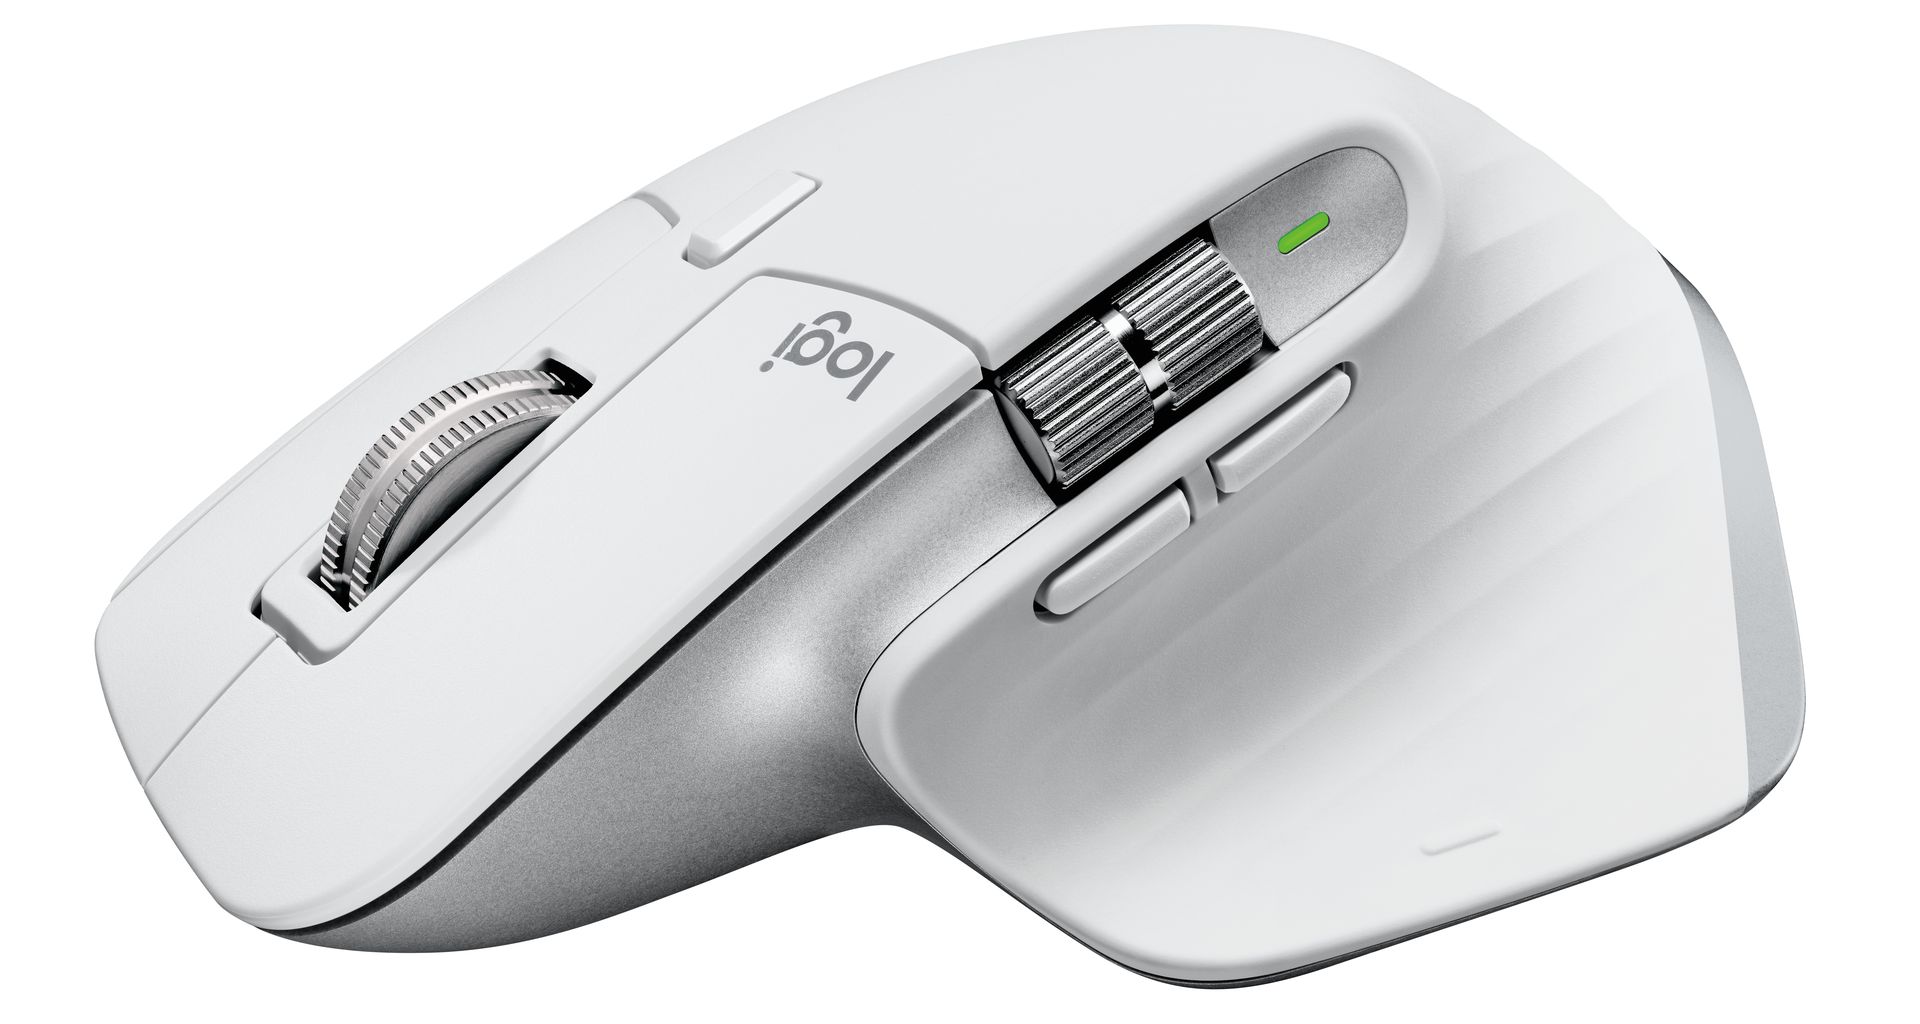 Logitech MX Mekanik Klavye, Mekanik Mini Klavye ve Master 3S Mouse: Özellikleri, fiyatı ve çıkış tarihi